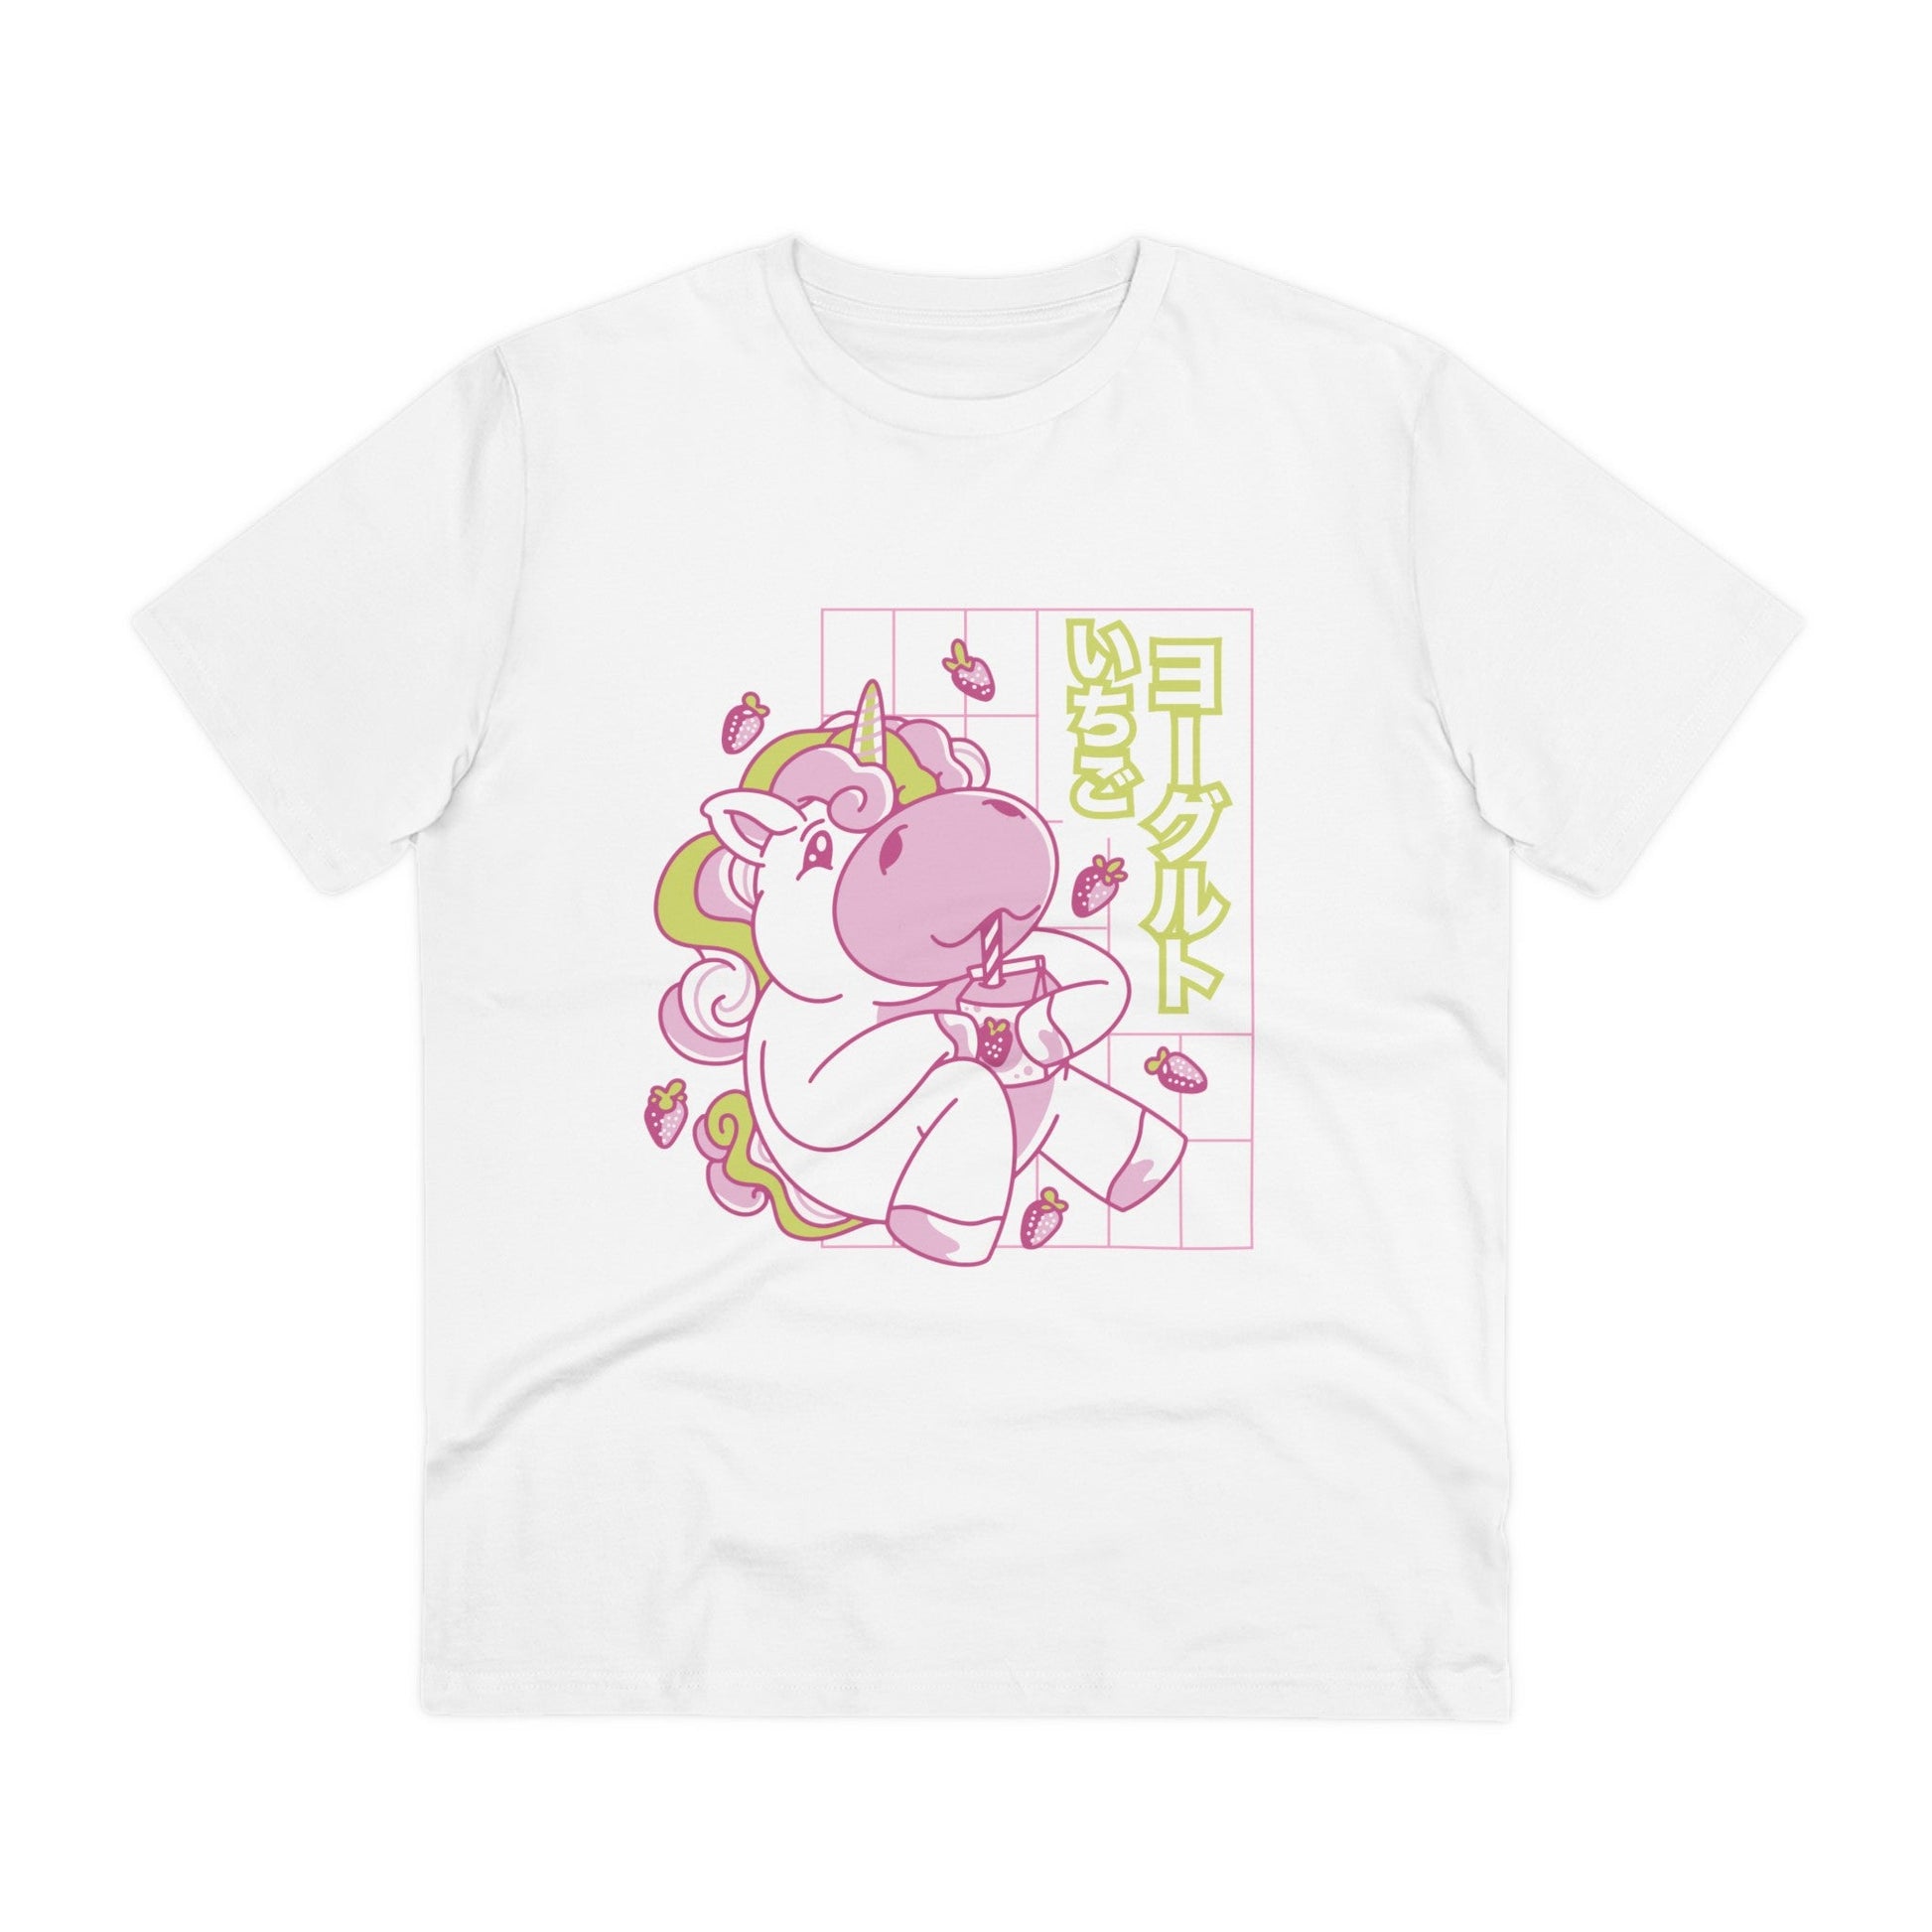 Printify T-Shirt White / 2XS Strawberry cute Unicorn - Unicorn World - Front Design